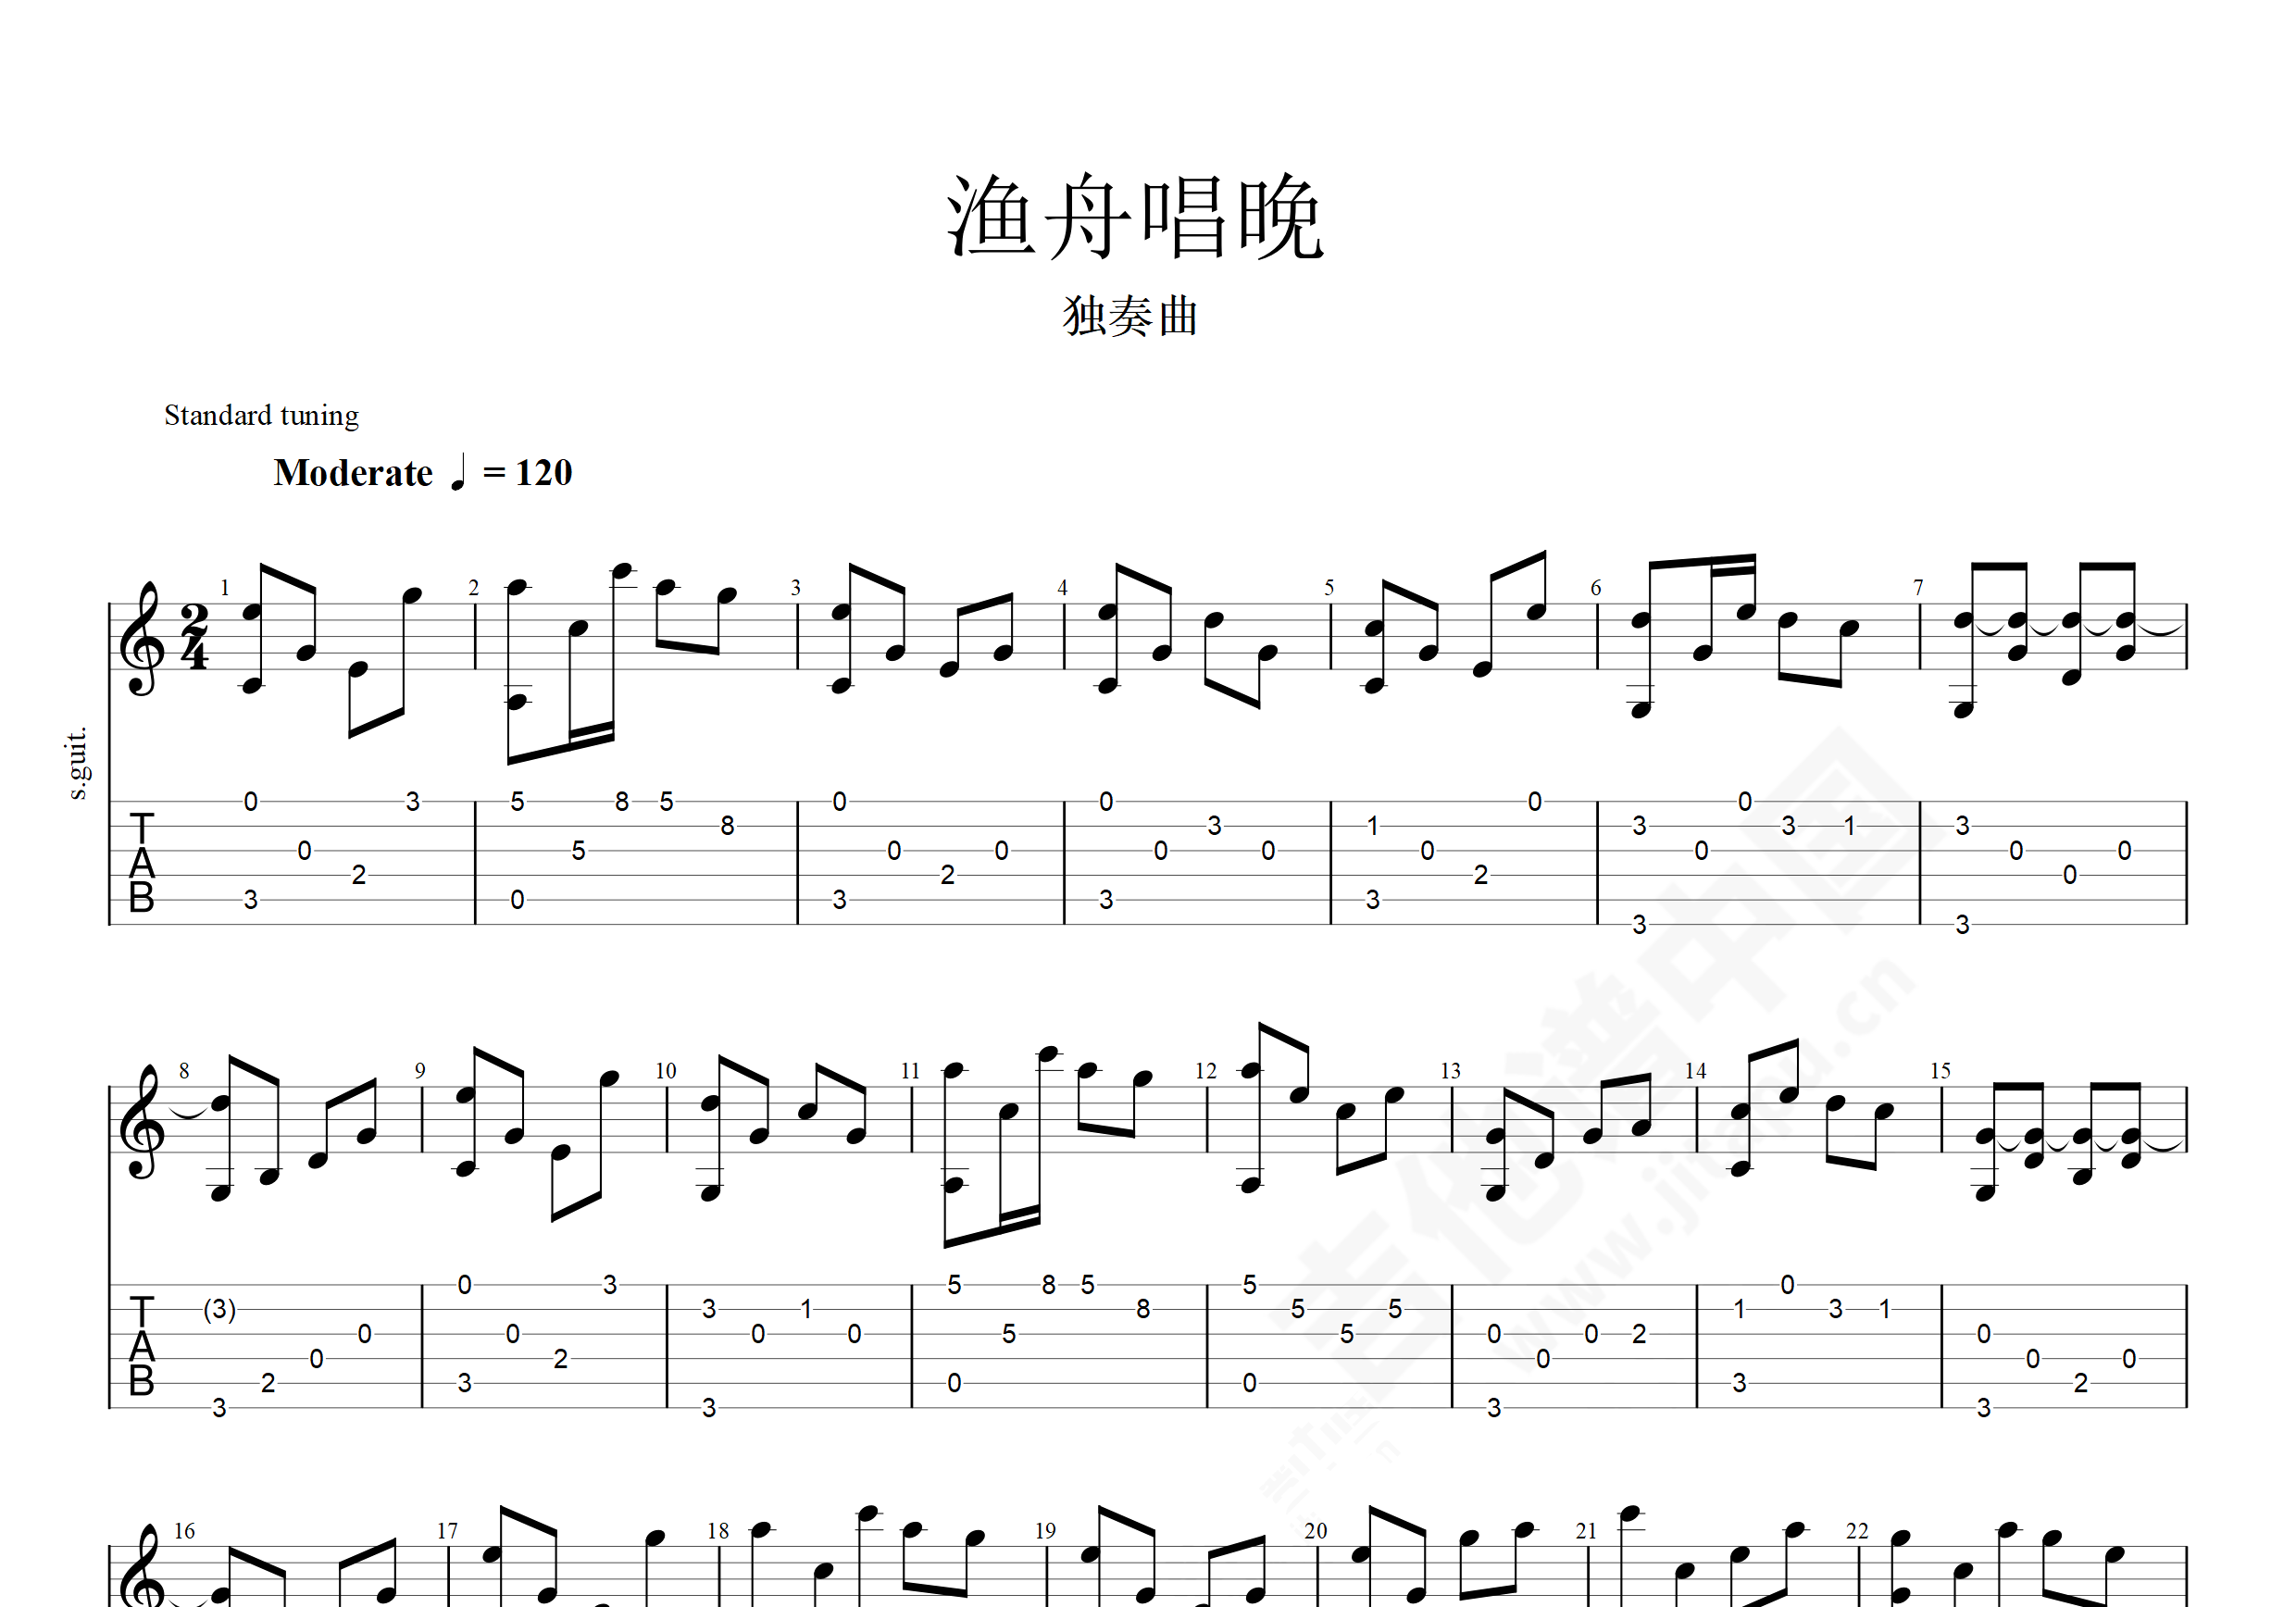 吉他中级练习曲《渔舟唱晚》中国乐曲-吉他曲谱 - 乐器学习网